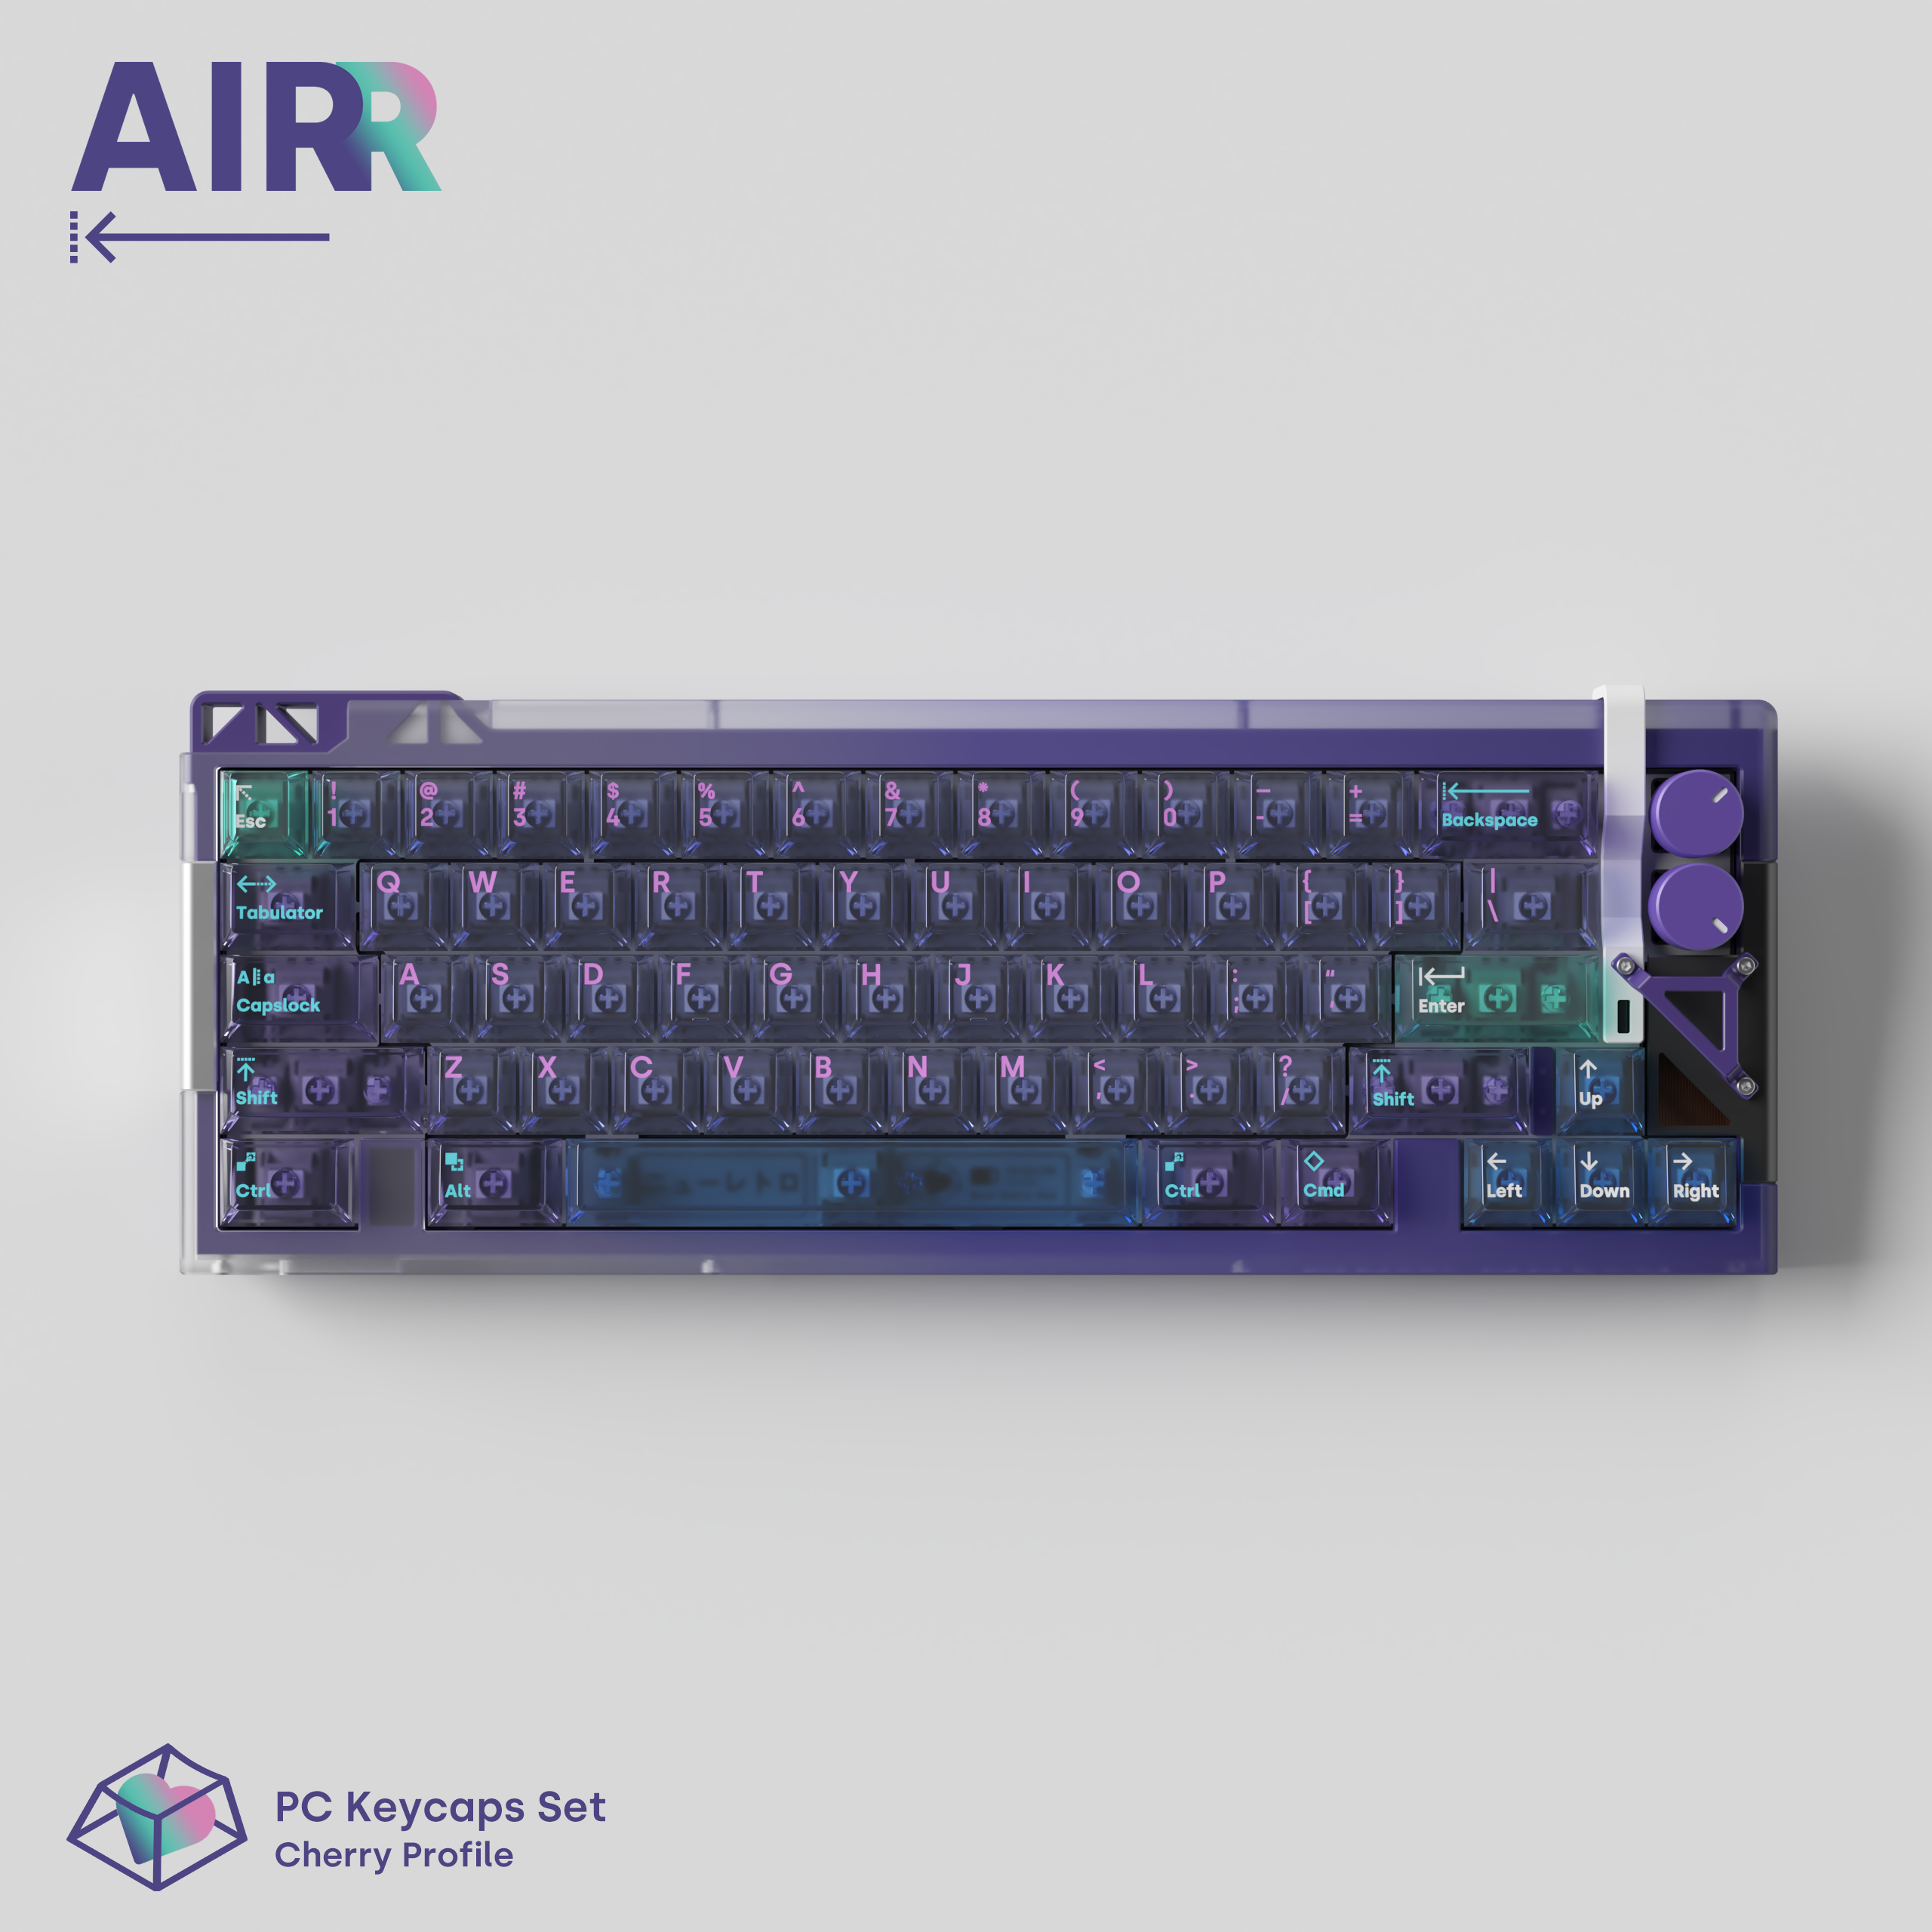 Deadline AirR PC Keycaps